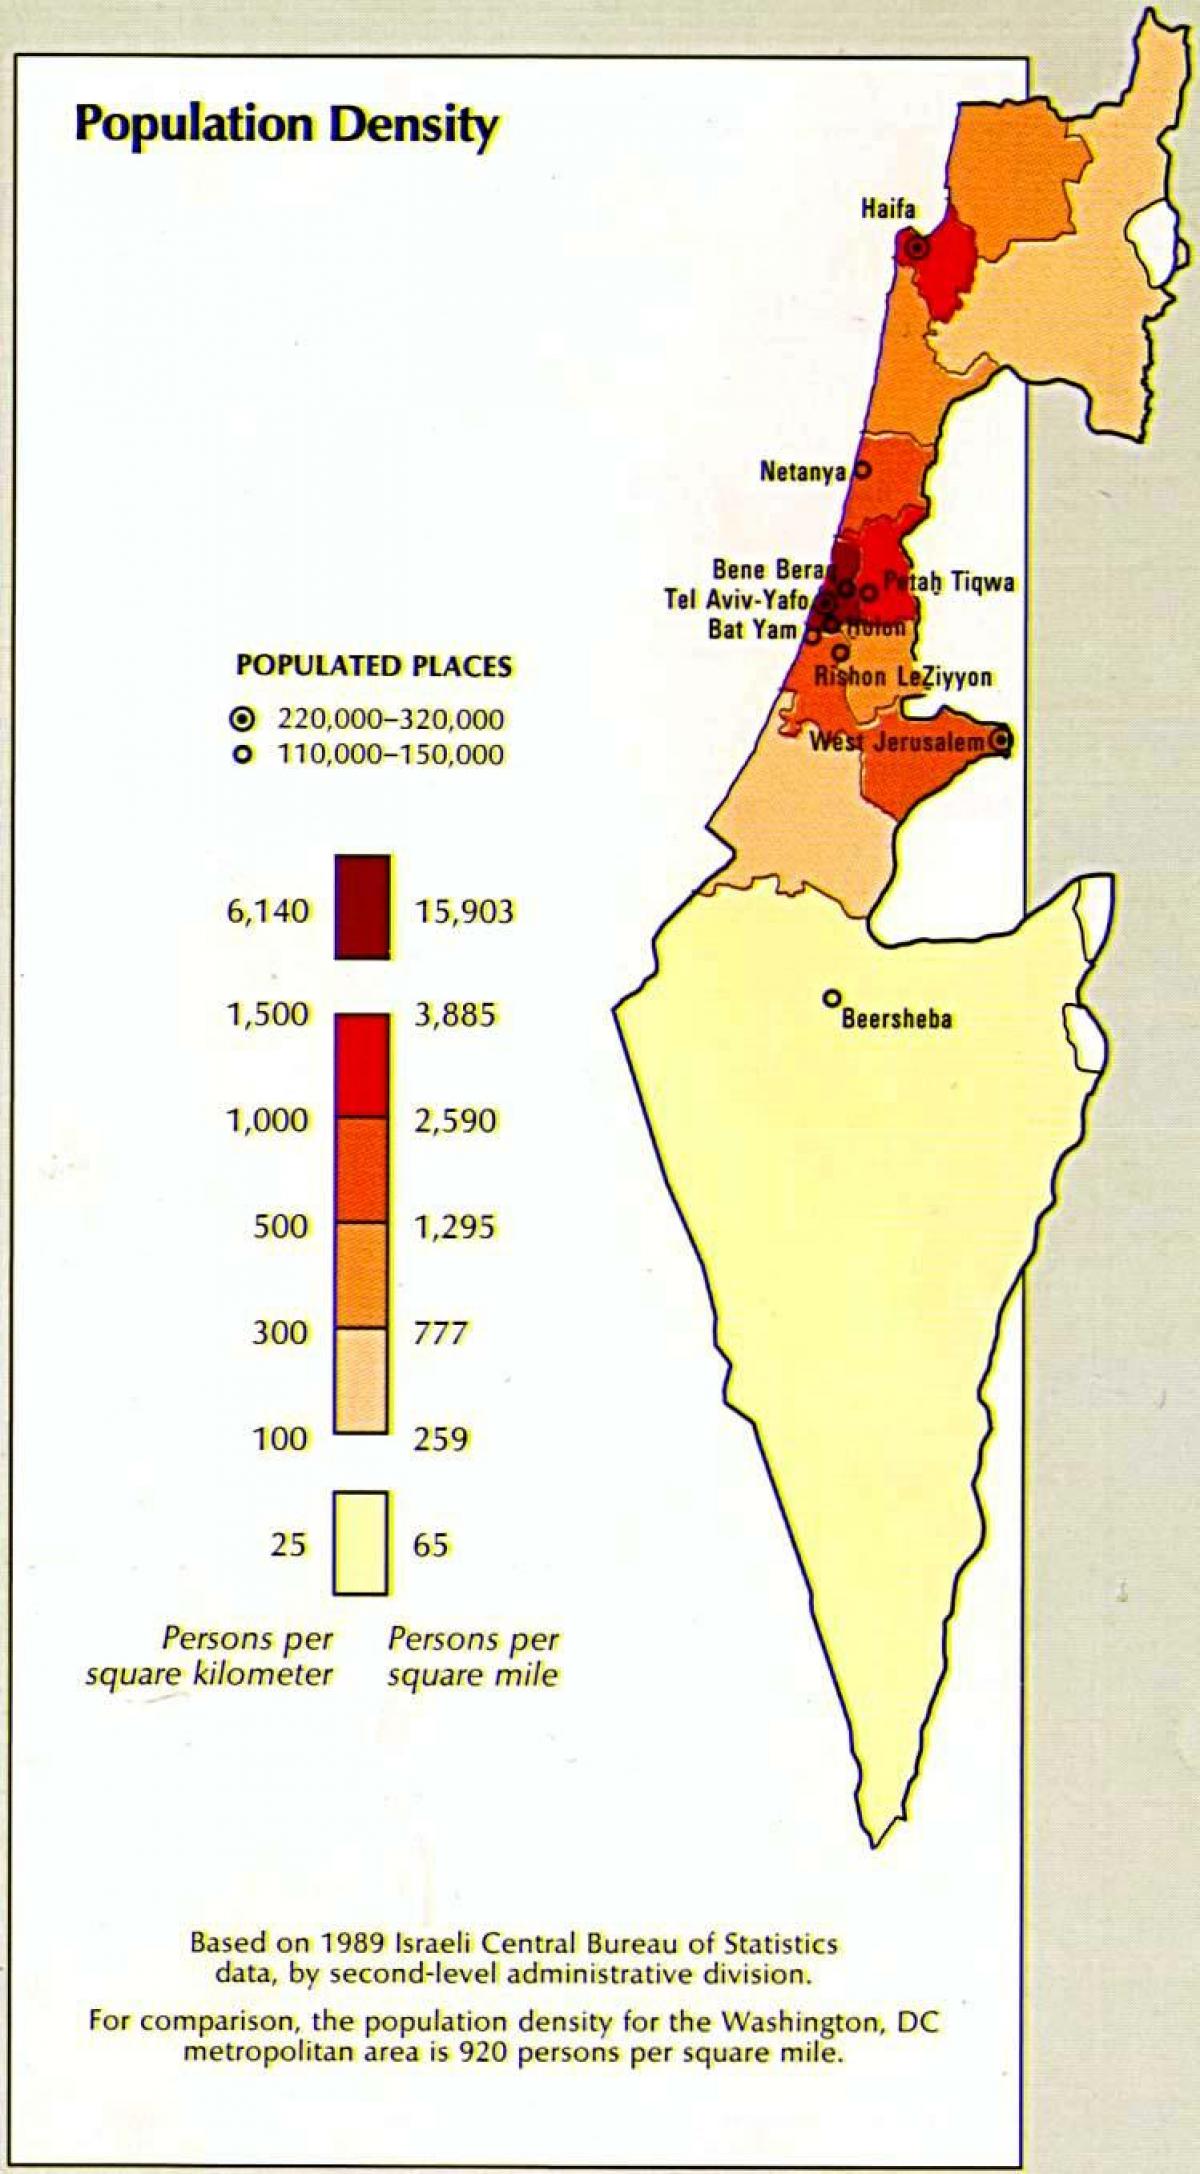 mapa de israel de la población